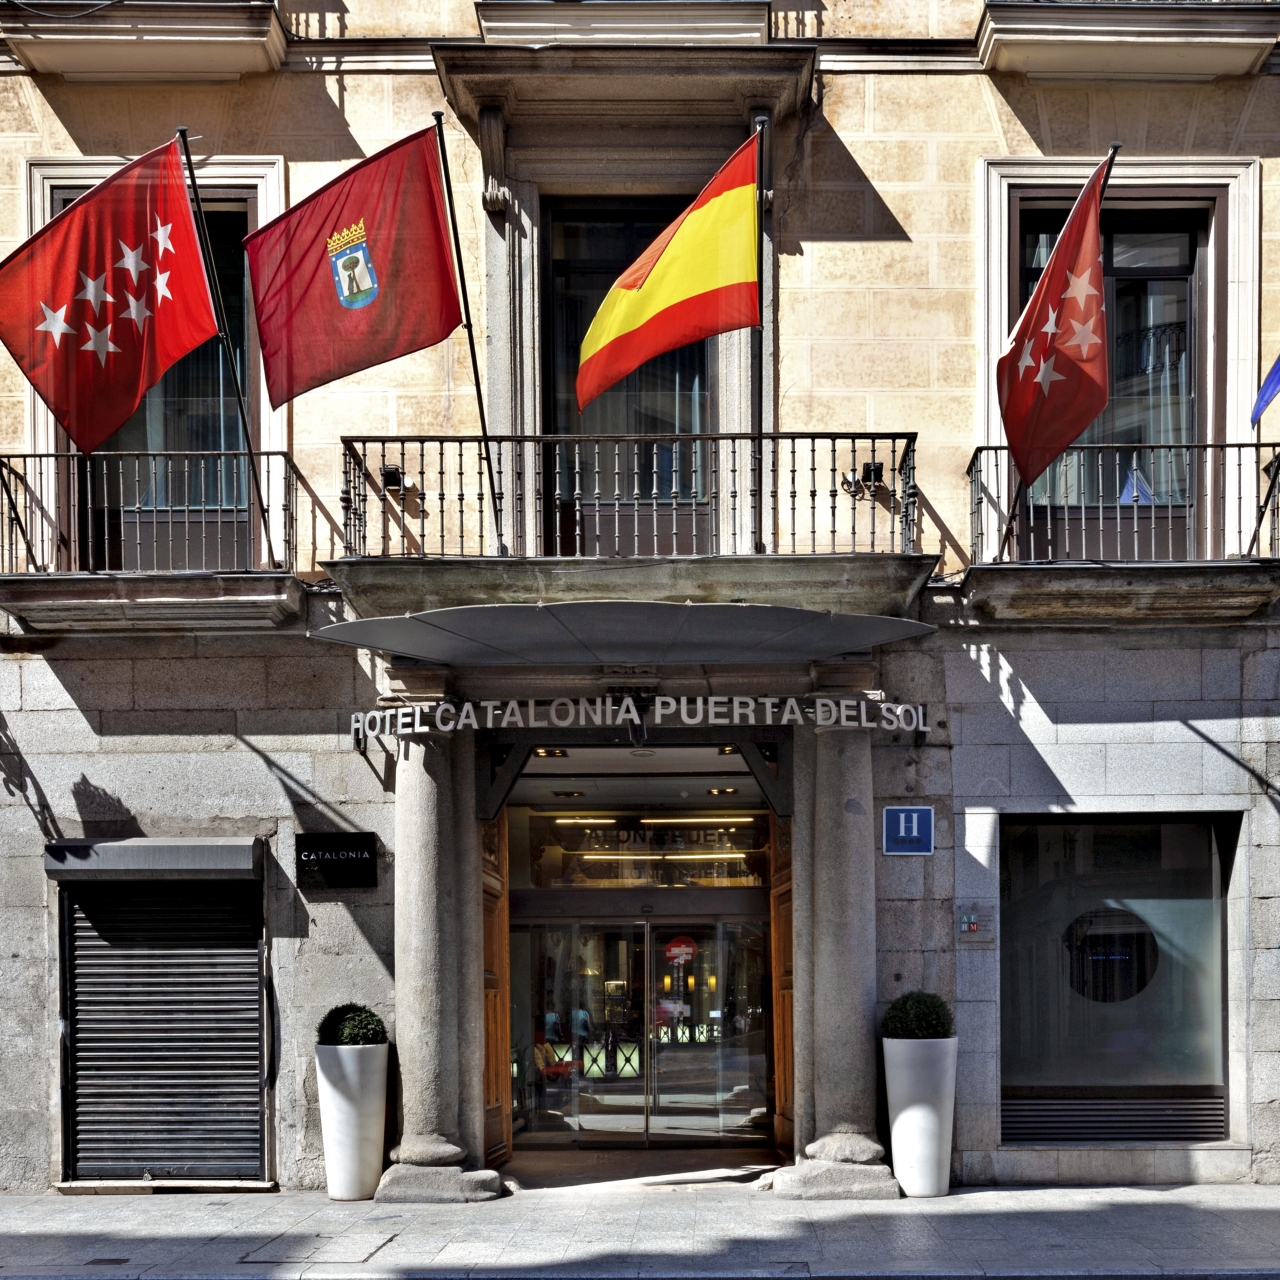 Hotel Catalonia Puerta del Sol - 4 HRS star hotel in Madrid (Madrid)